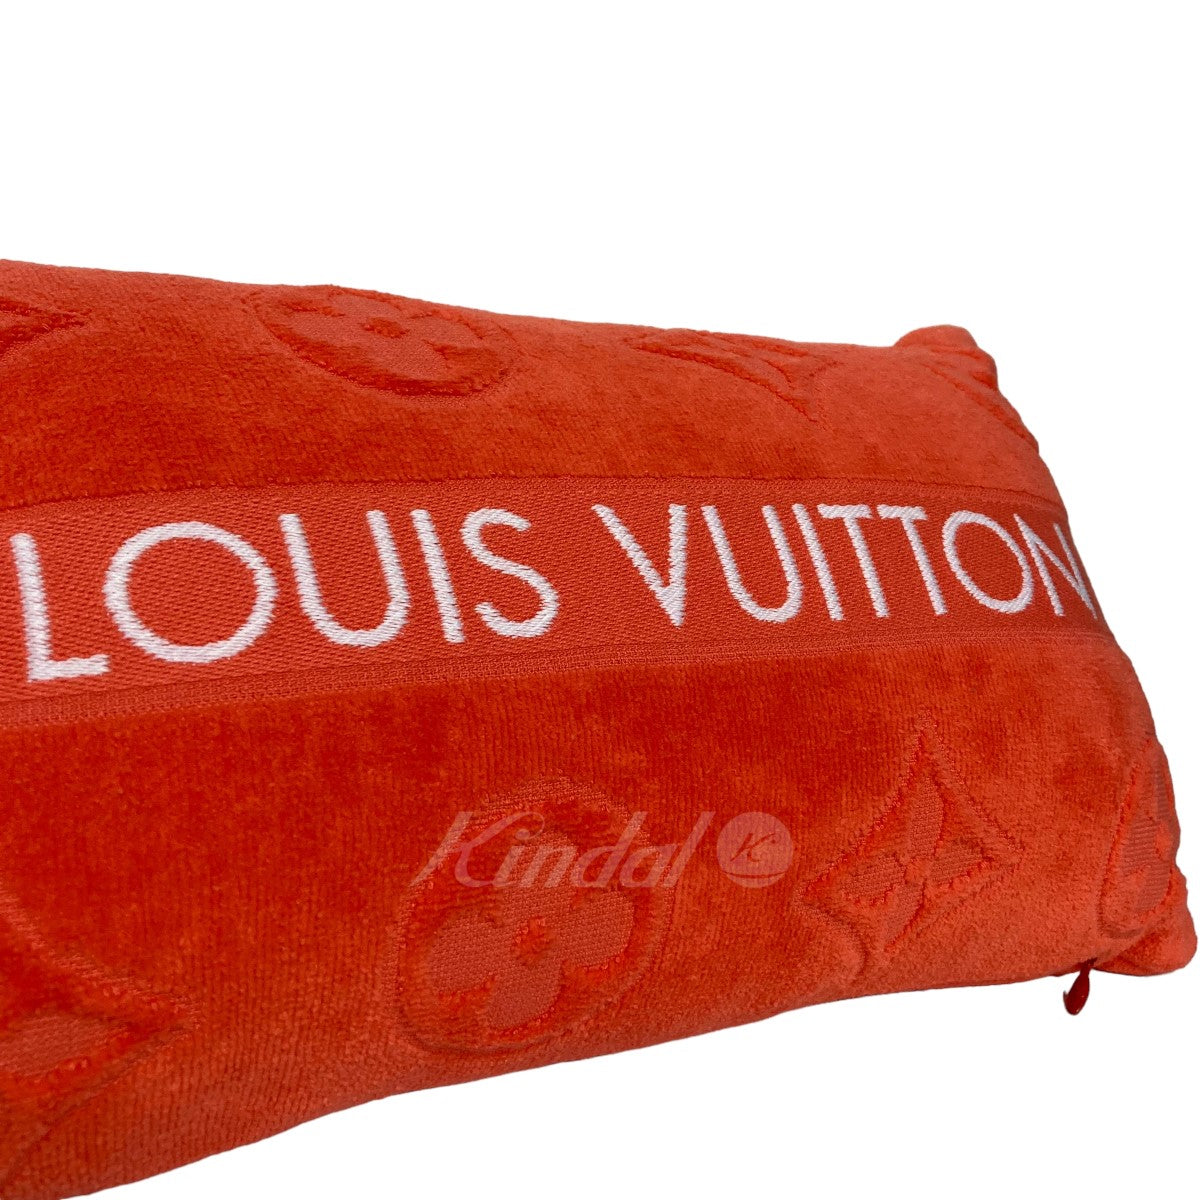 LOUIS VUITTON(ルイヴィトン) クッション M78477 オレンジ サイズ 12 